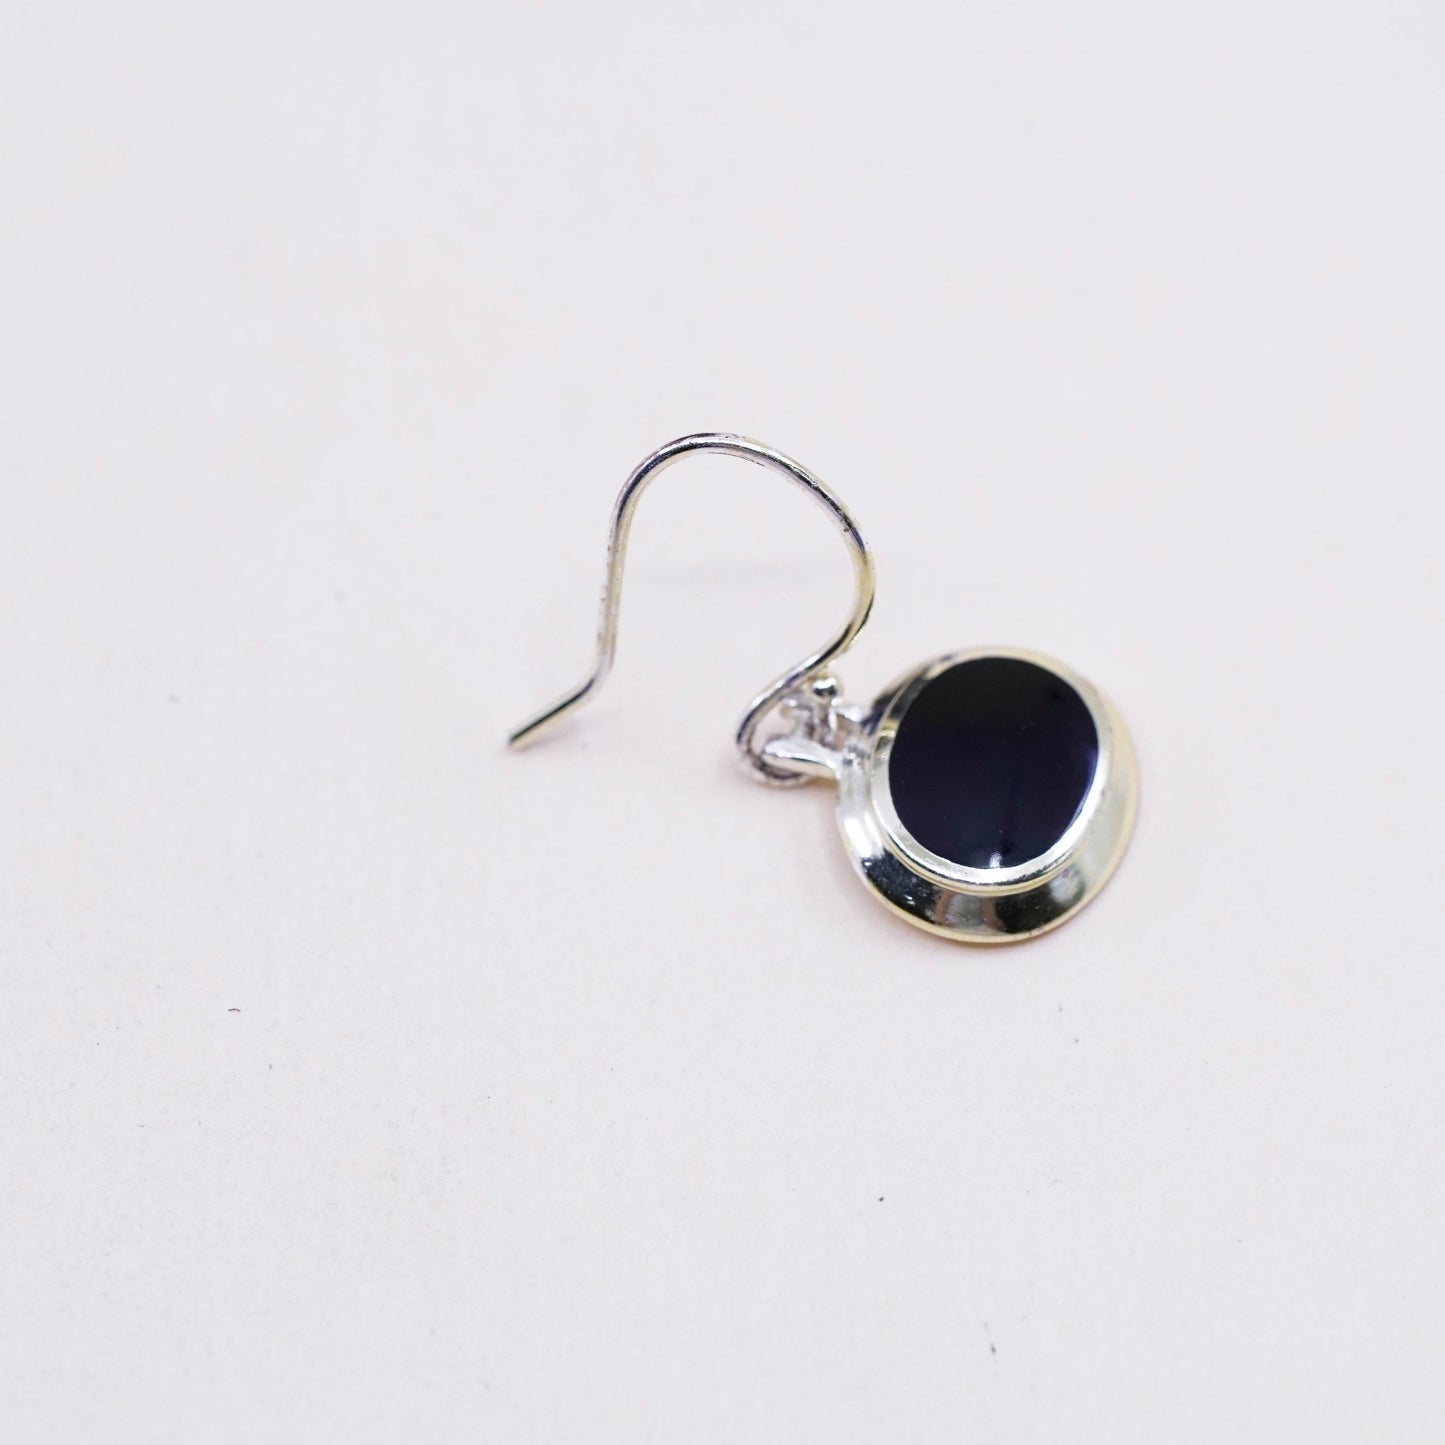 Vintage Sterling silver handmade earrings, 925 oval obsidian